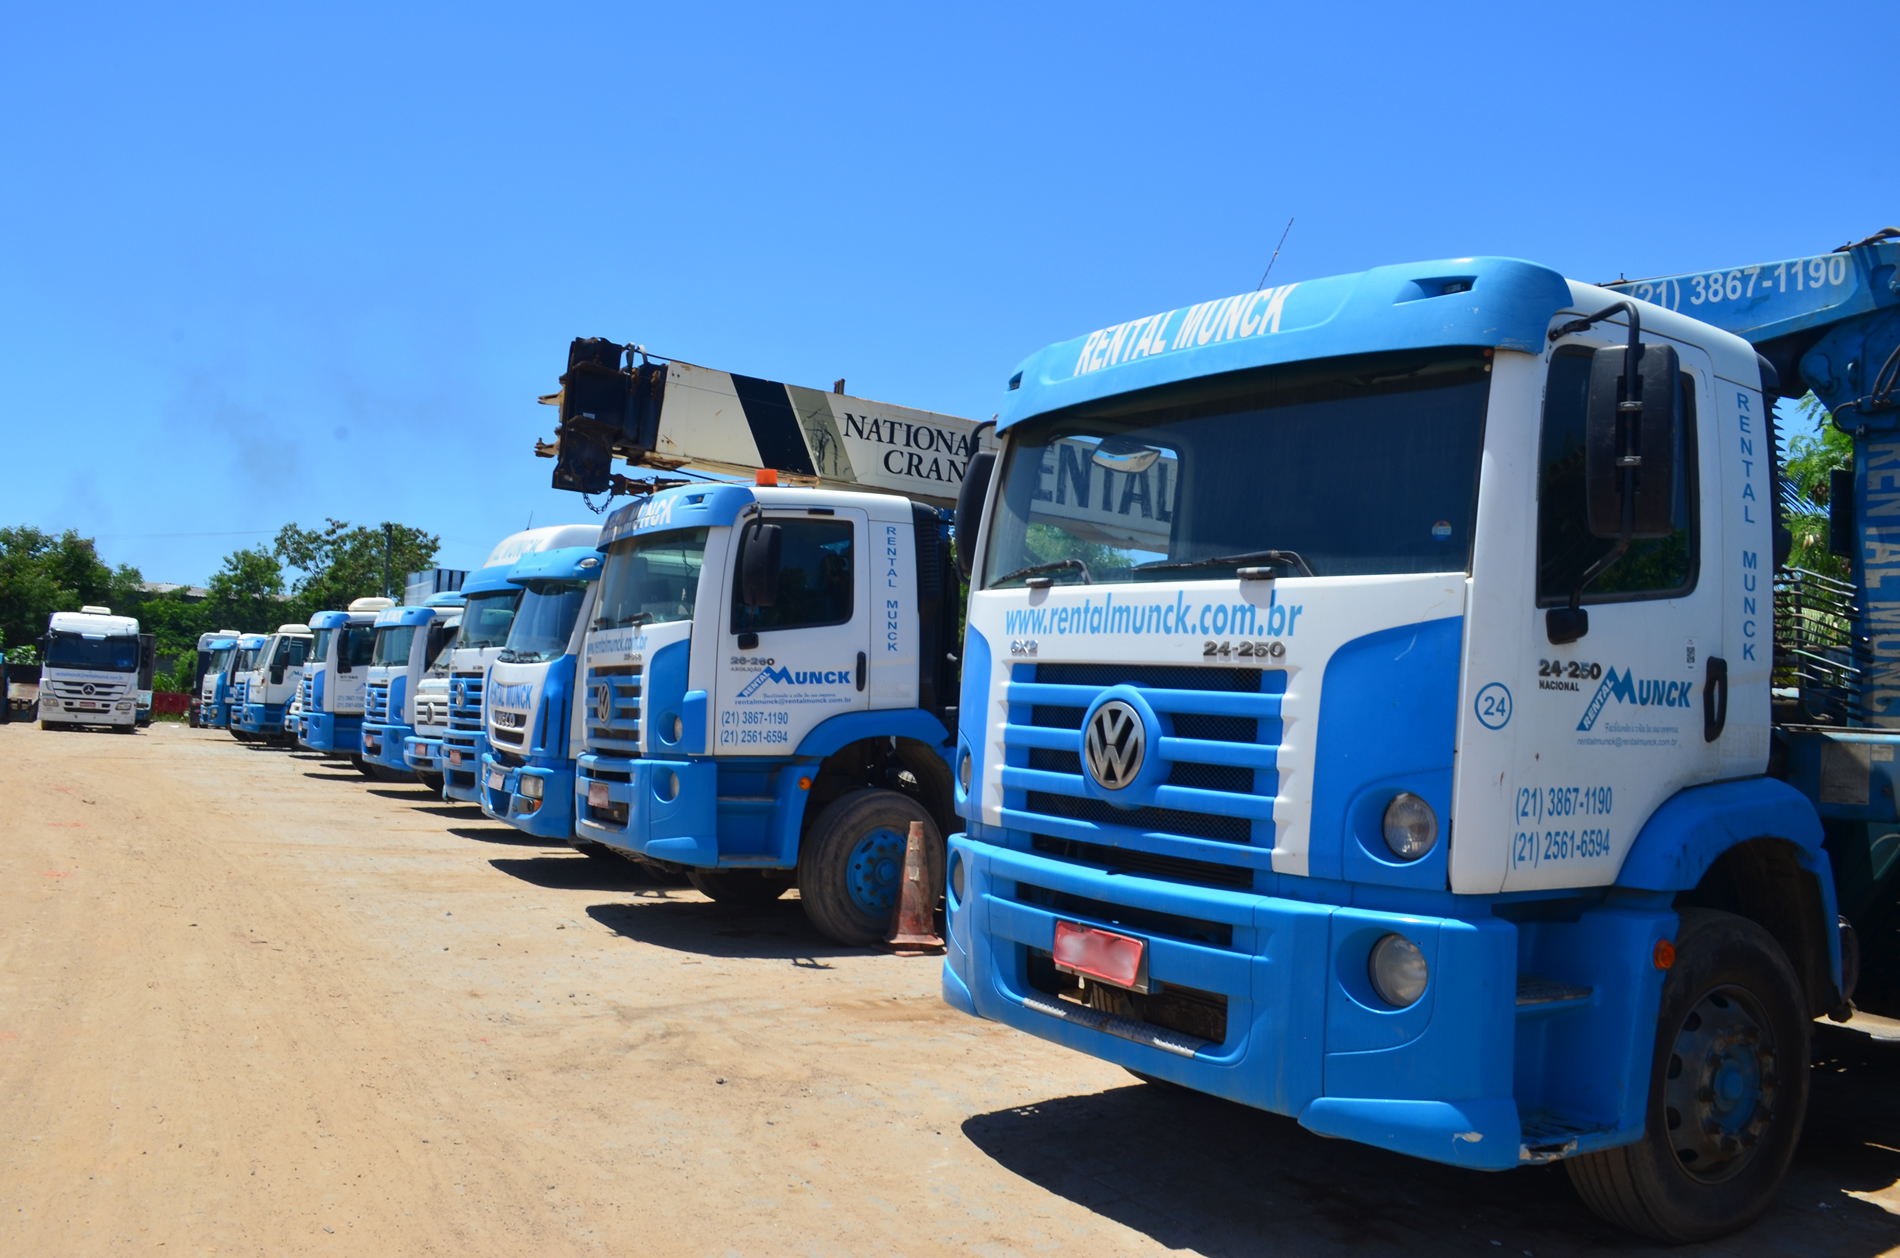 Possuímos o melhor serviço de locação de caminhão munck do RioJZ Munck –  Aluguel de Caminhão Munck – Munck Rj – Serviço Munck – Aluguel de Munck –  Rio de Janeiro – RJ